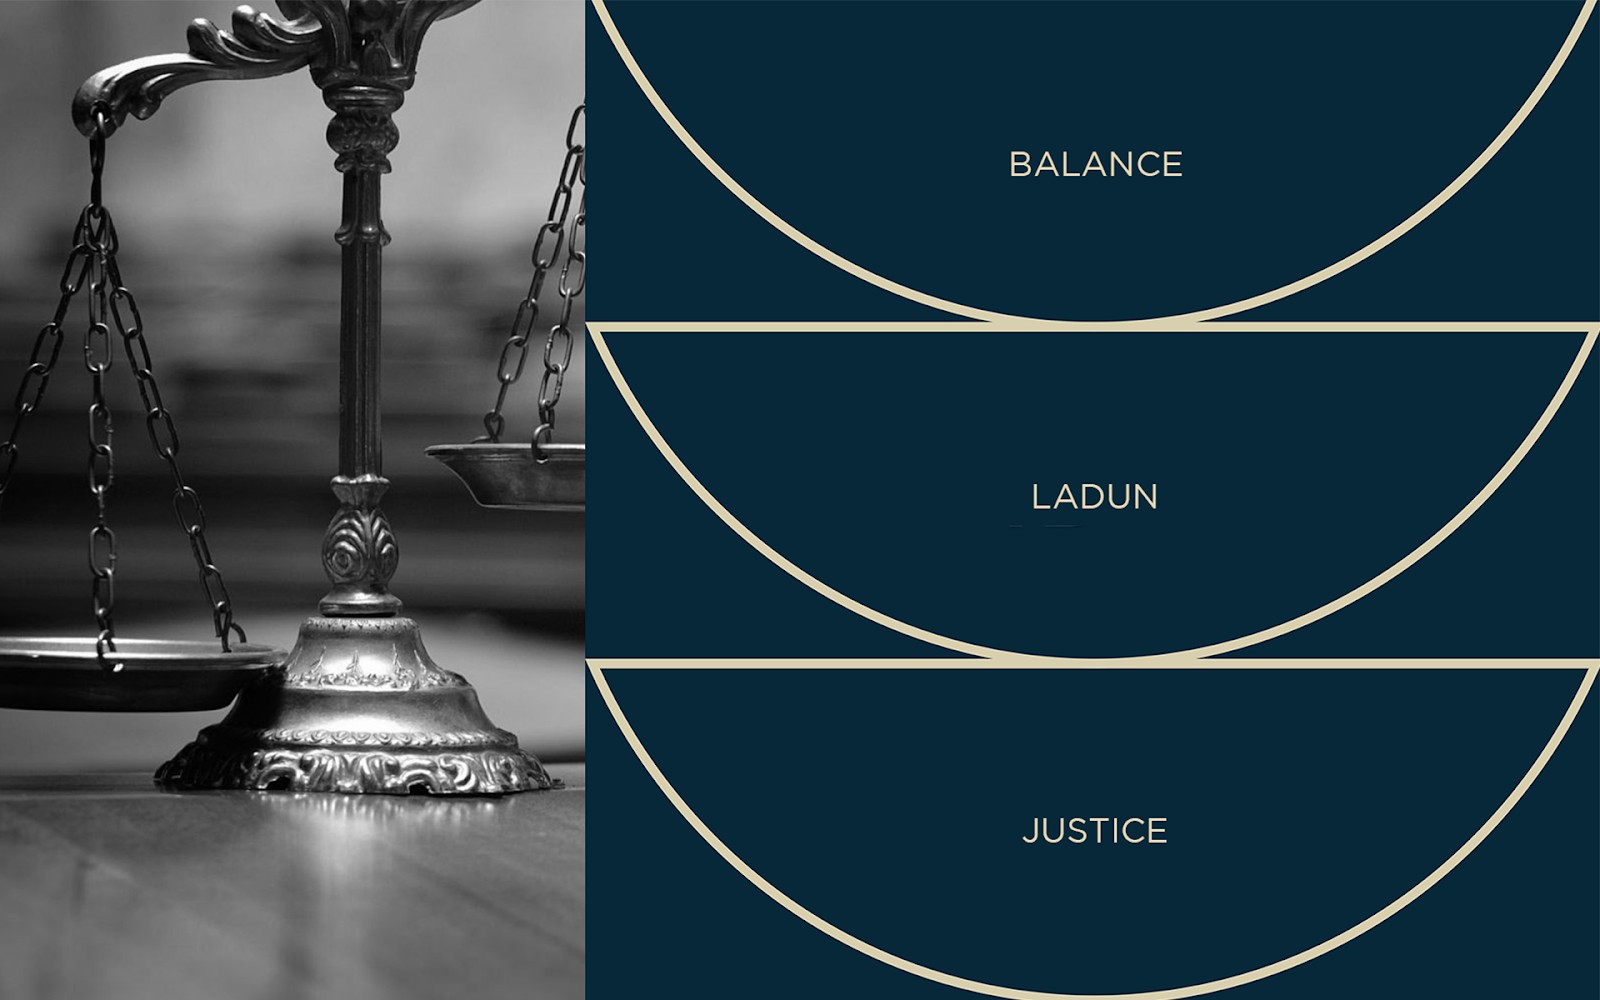 法律咨询平台Ladun视觉形象设计